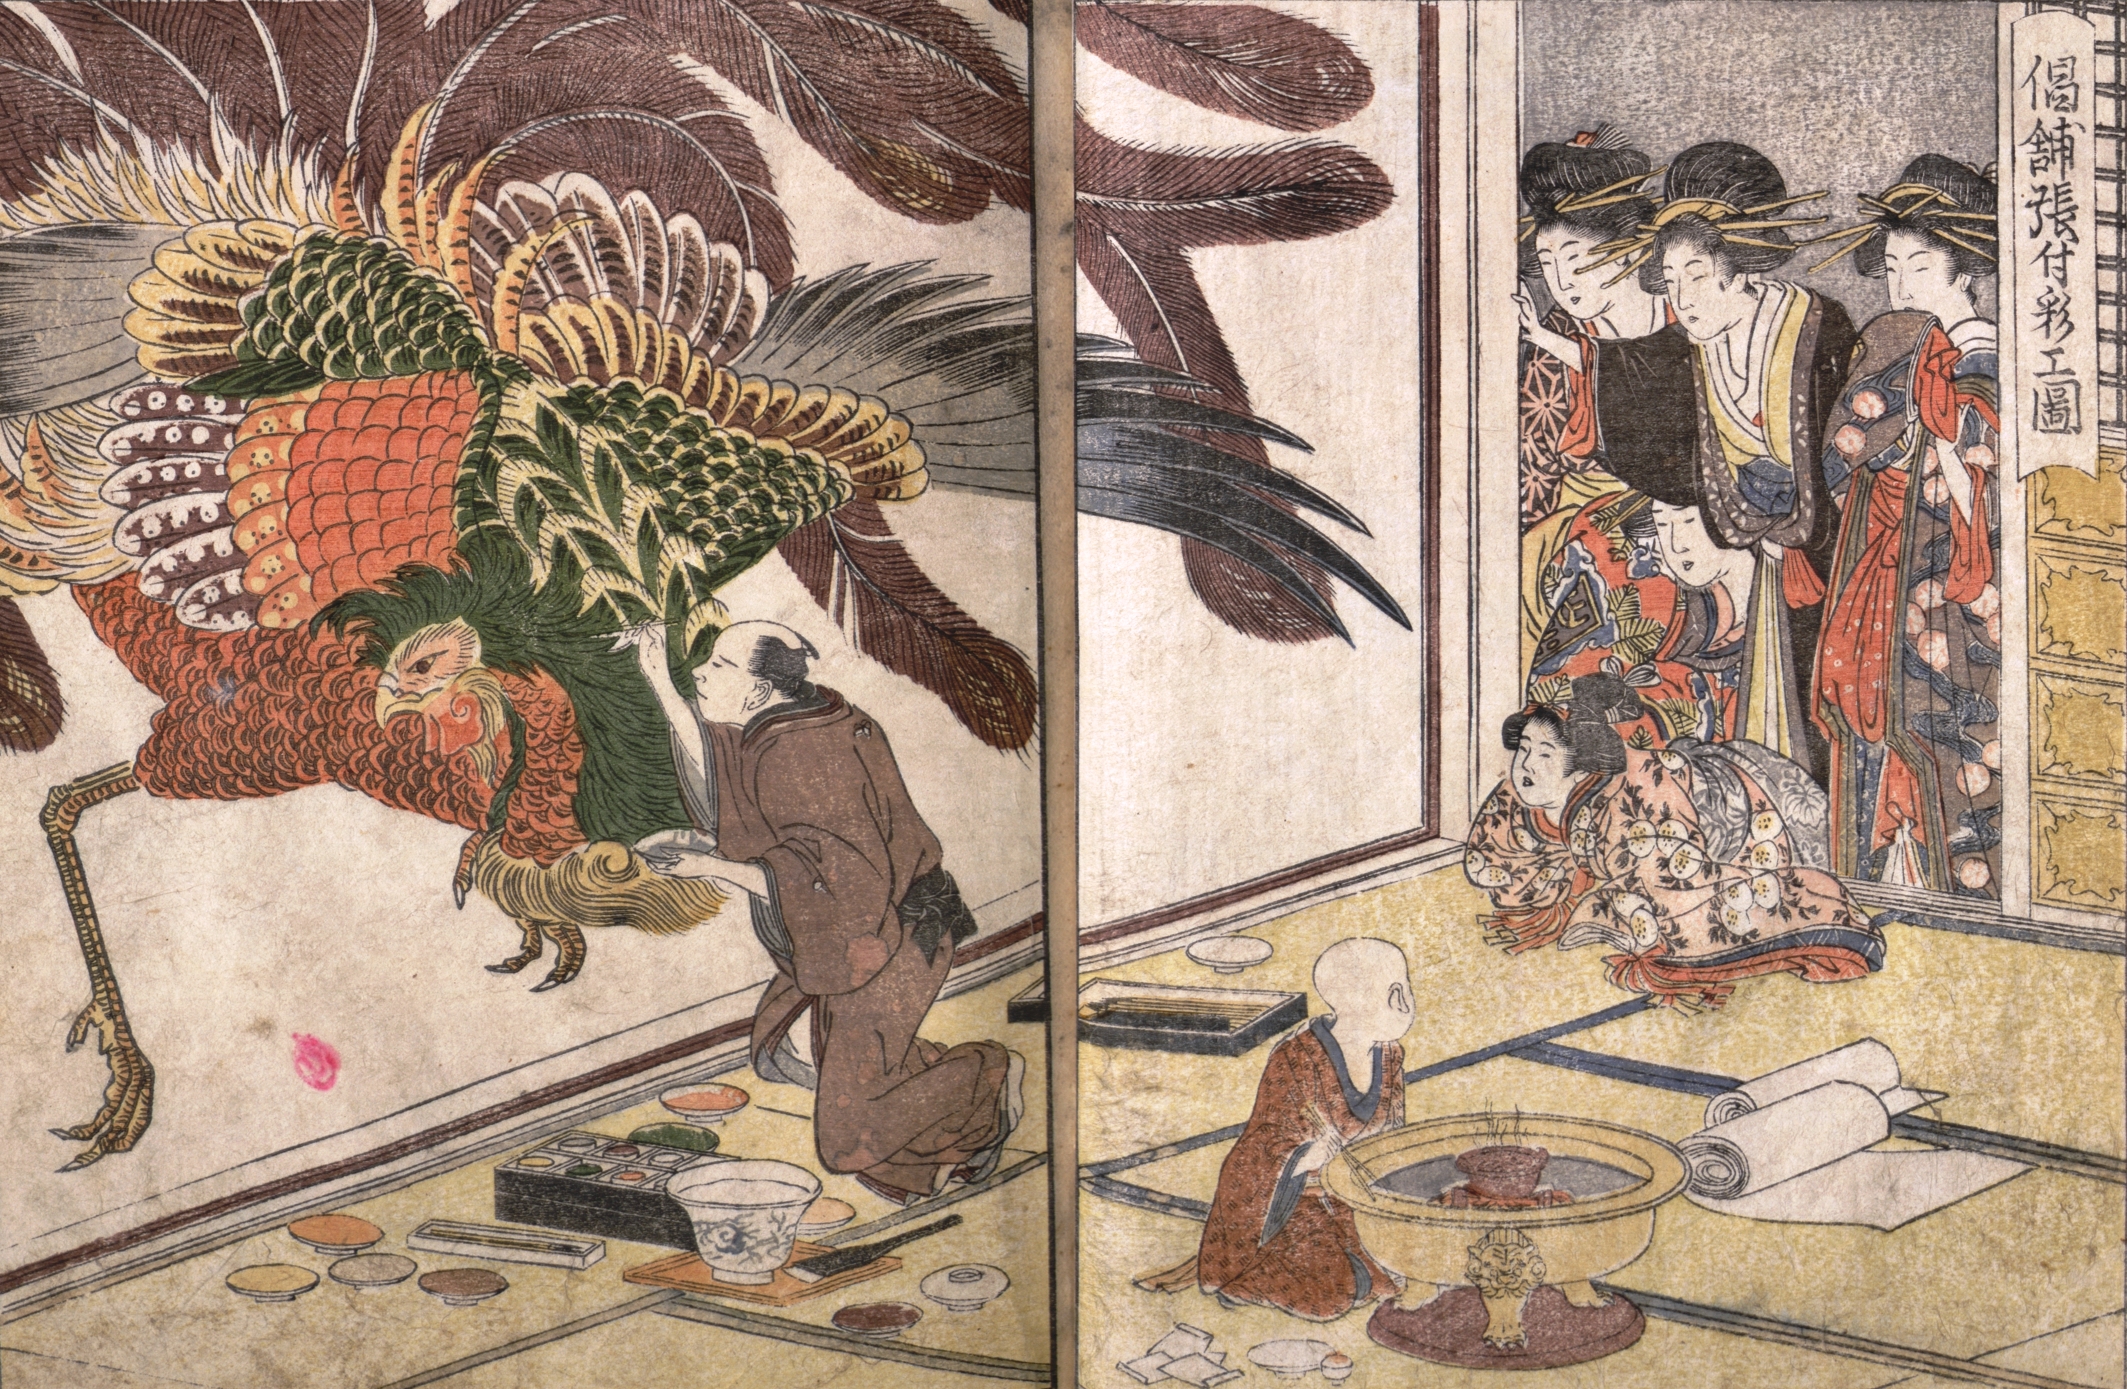   Kitagawa Utamaro, L'Almanach des Maisons vertes, Exécution d'une peinture murale dans une maison de courtisanes, gravure sur bois en couleurs, 1804, Bibliothèque de l'INHA, 8 EST 156